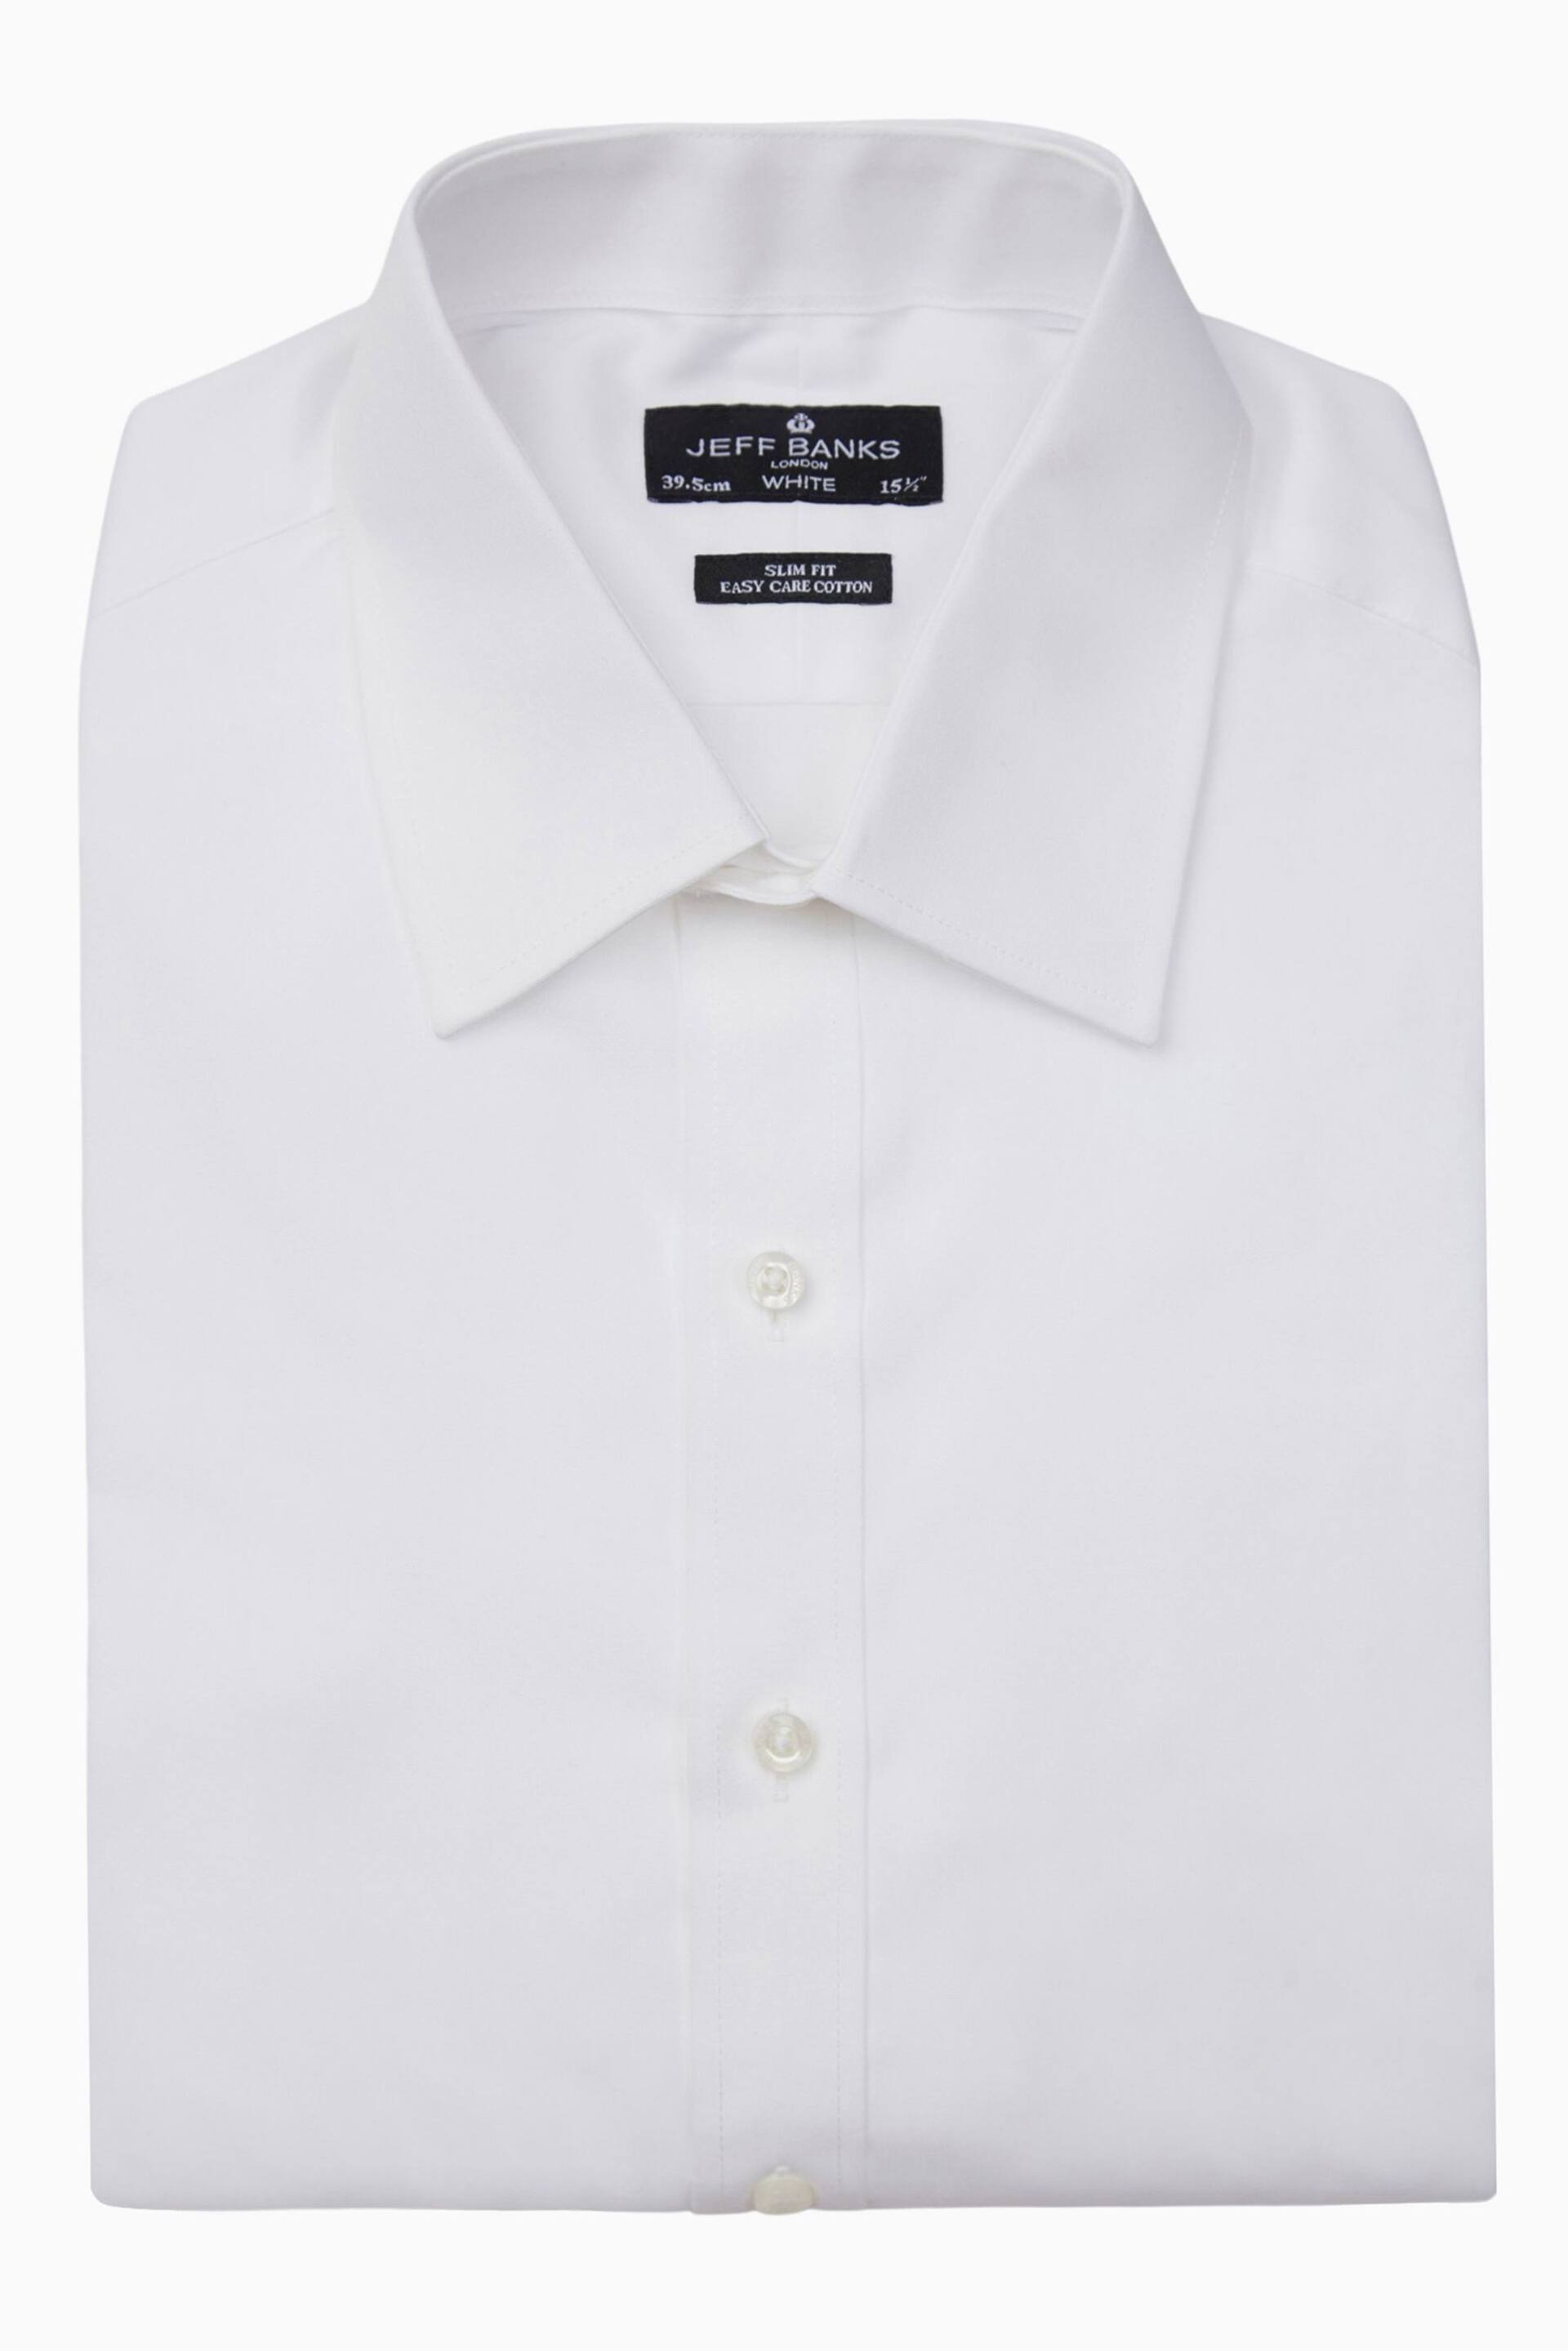 Jeff Banks White Double Cuff Milan Cutaway Shirt - Image 1 of 4